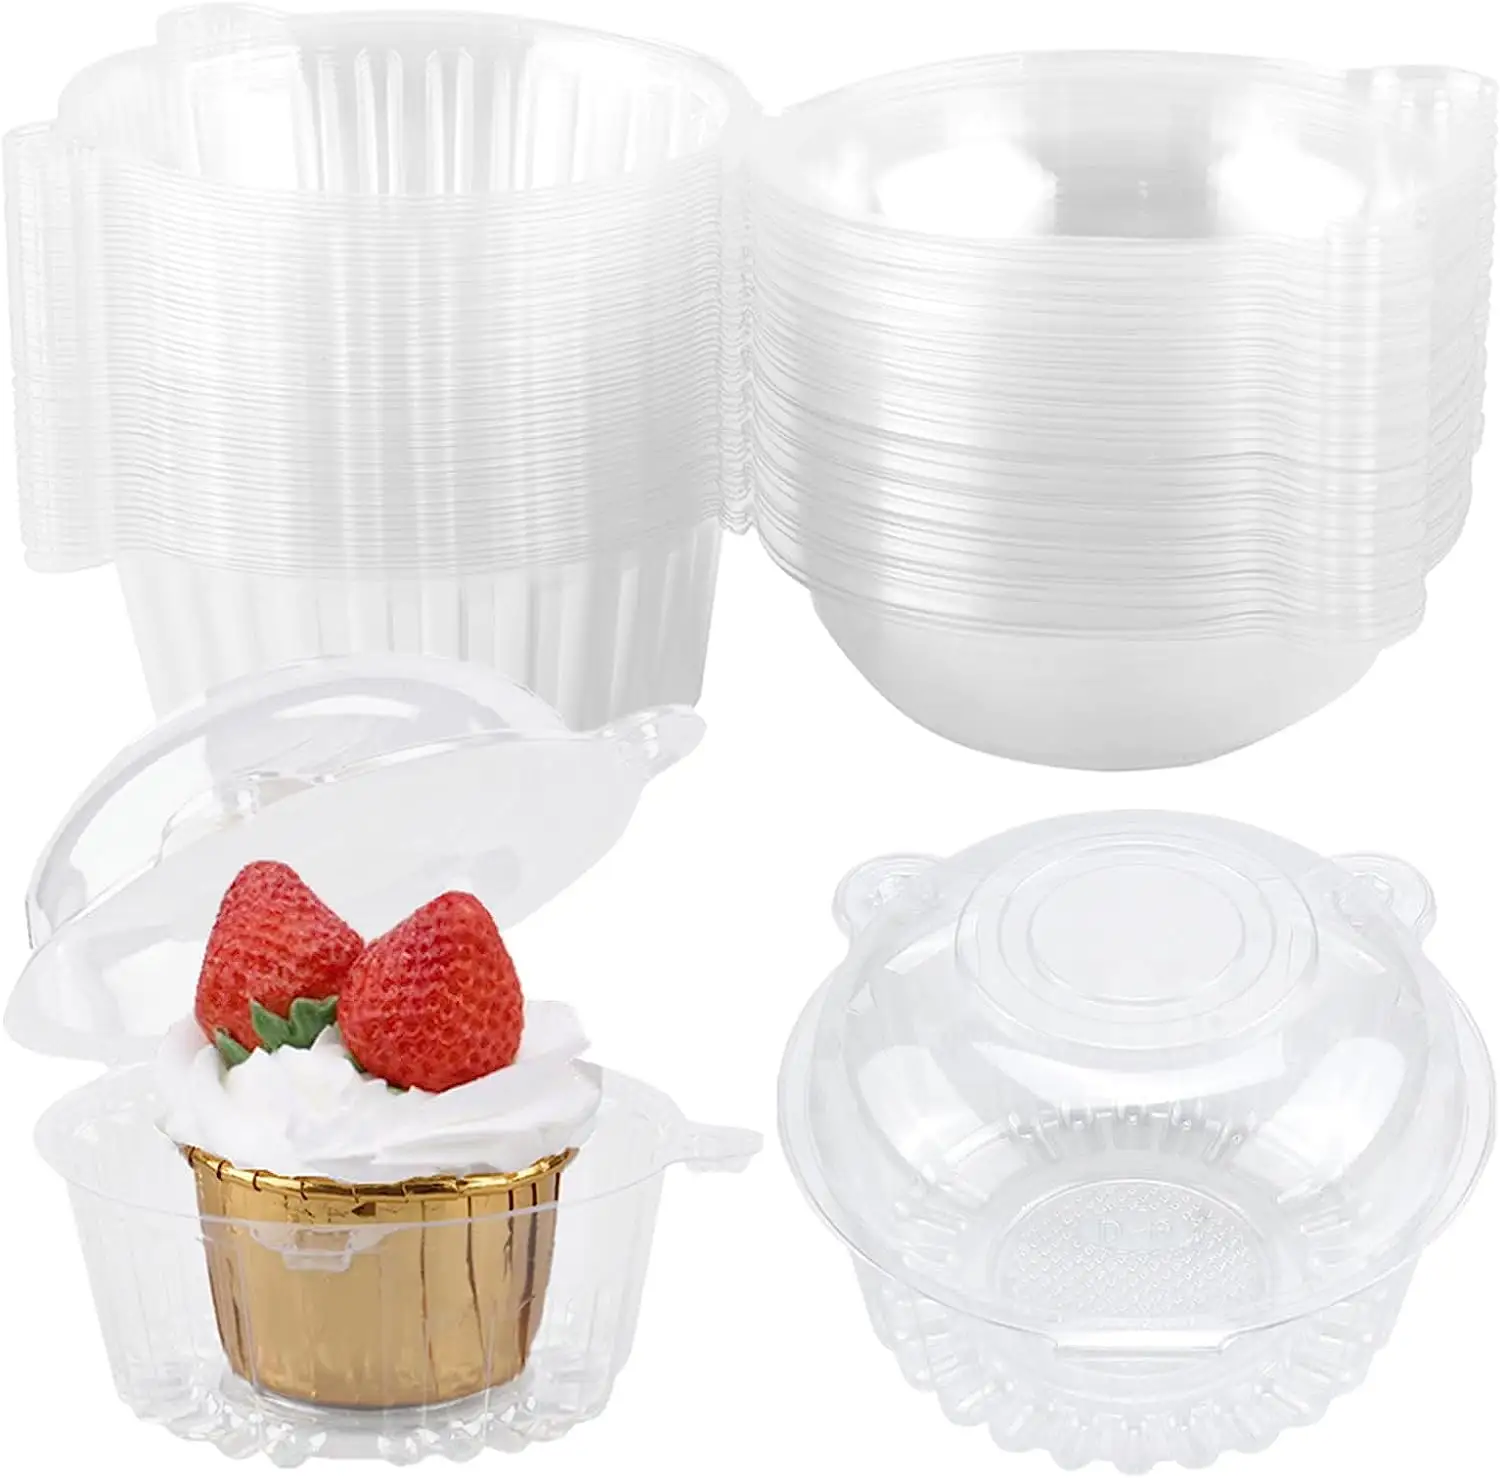 Cajas individuales para cupcakes, caja de embalaje de plástico transparente desechable con tapa, contenedor de comida con bisagras de plástico para fiestas